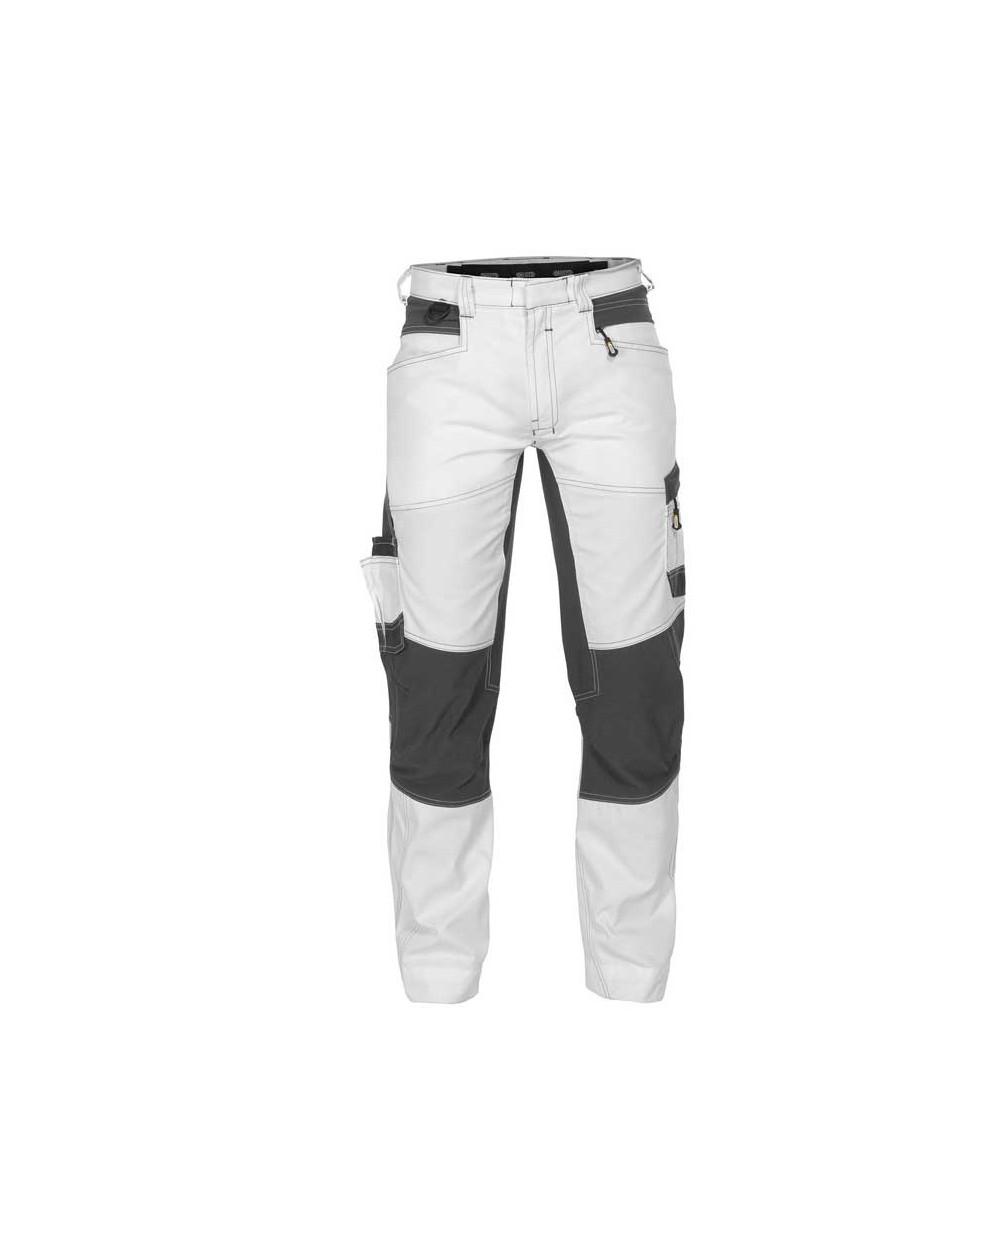 Pantalon de travail Helix Blanc et Gris - DASSY